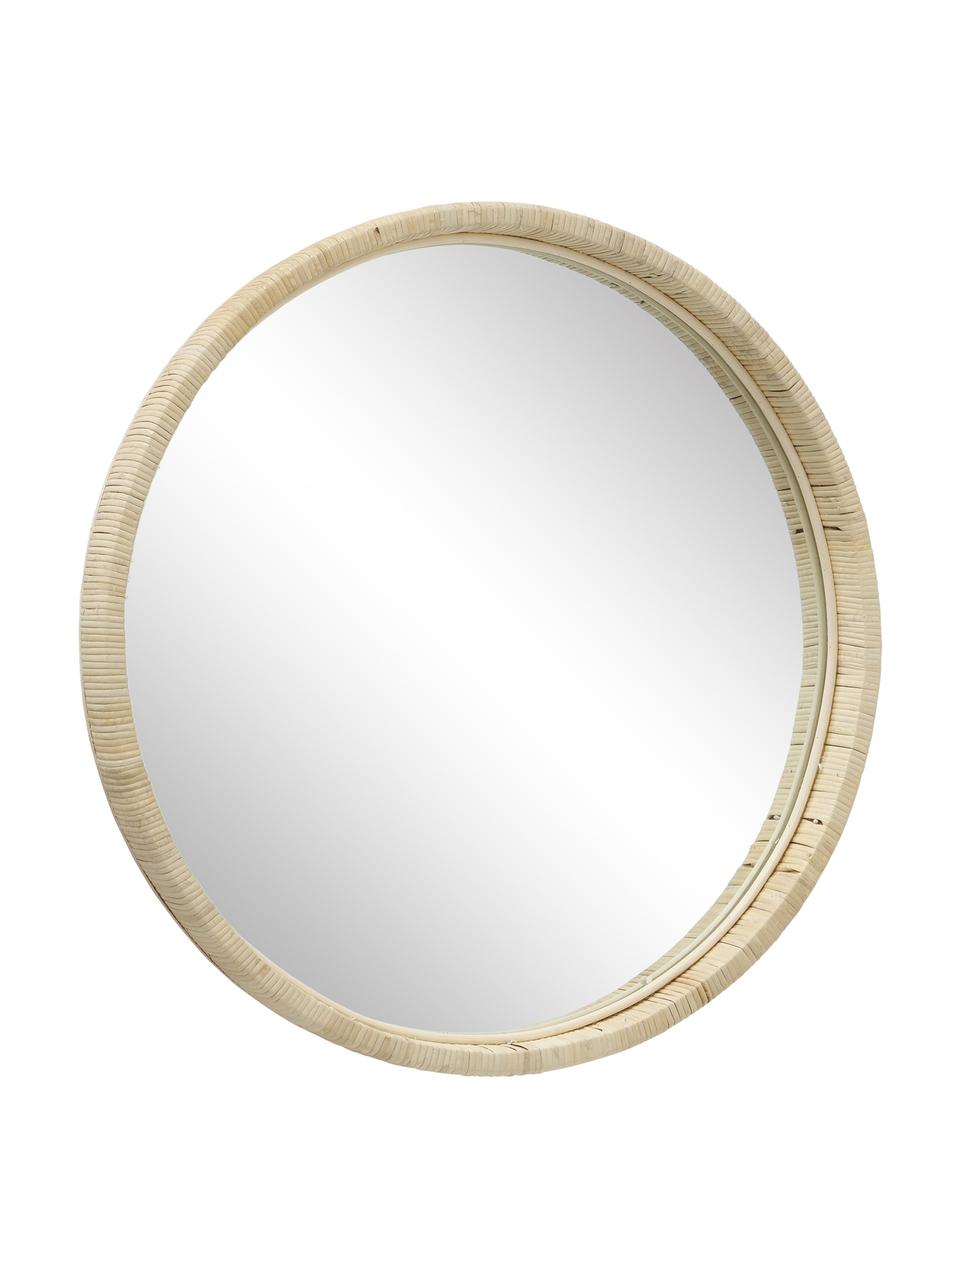 Kulaté nástěnné zrcadlo s bambusovým rámem Yori, Béžová